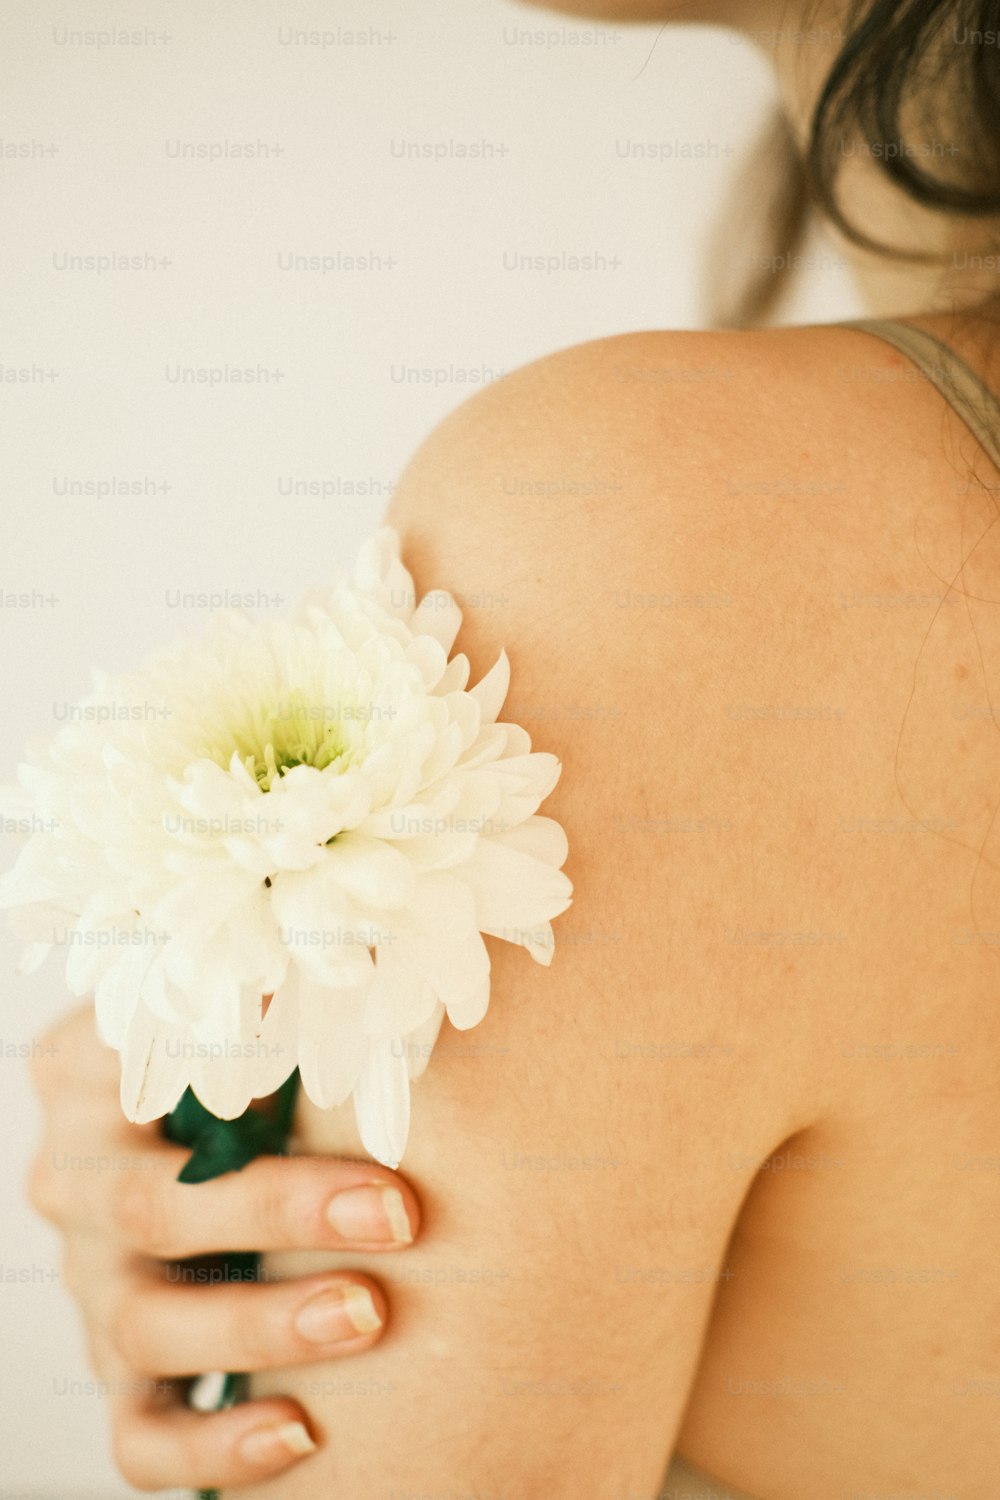 Una mujer sosteniendo una flor blanca en su brazo derecho